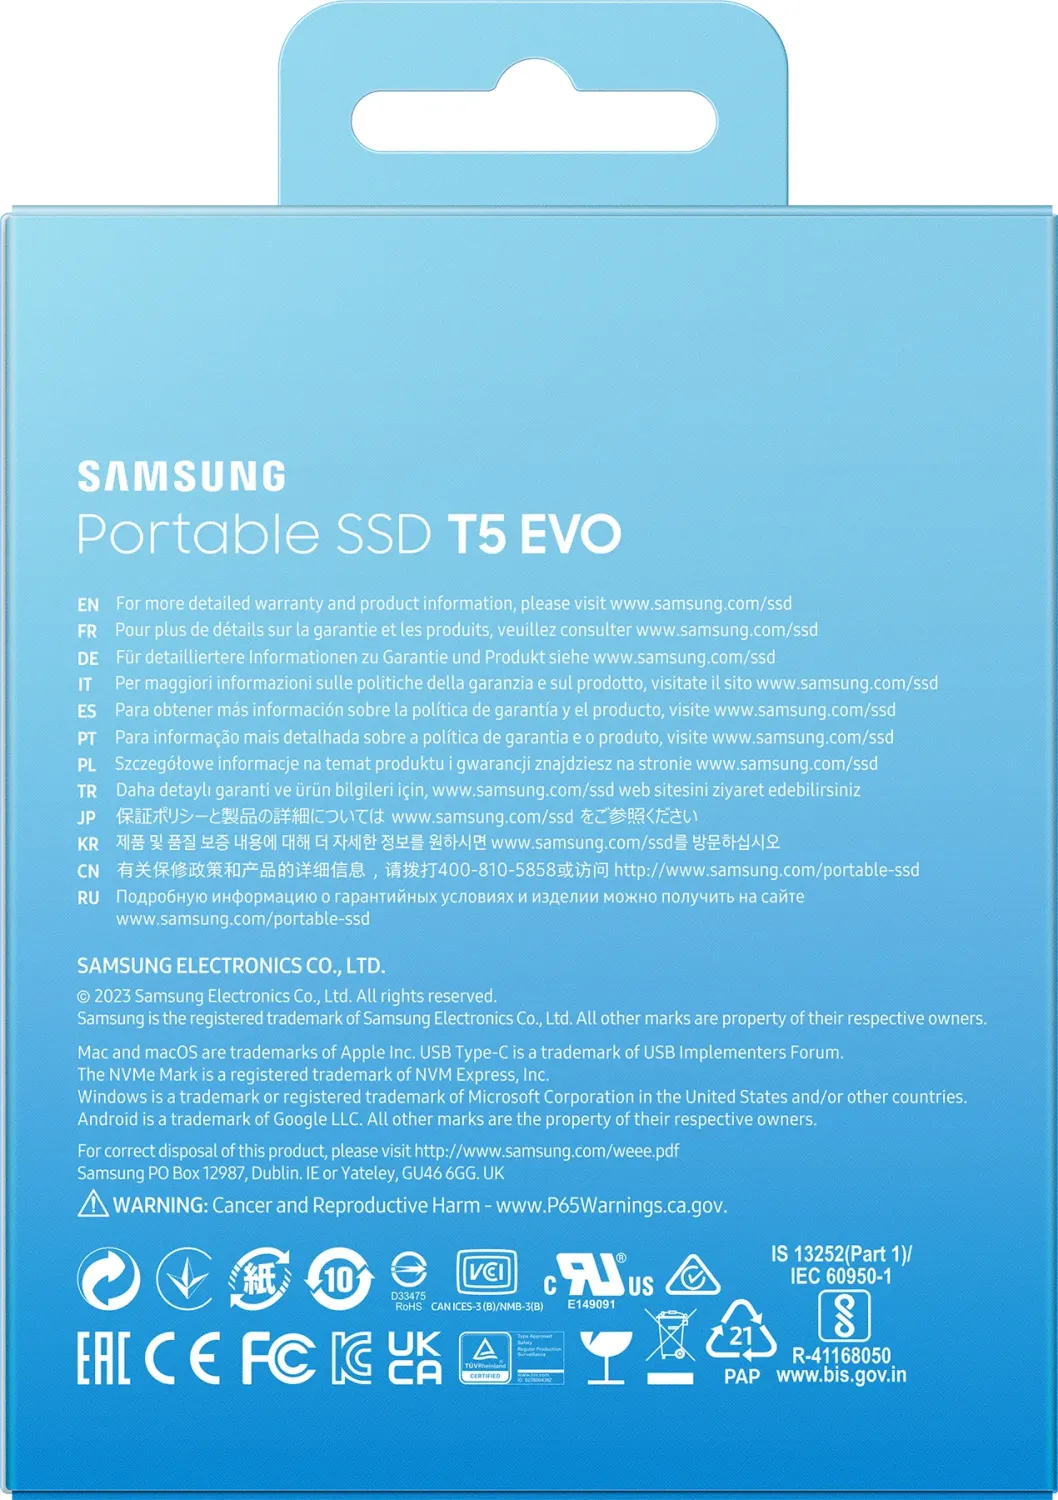 Samsung SSD T5 Evo: Neue, günstige Rugged-SSD mit 2, 4 oder 8 TB